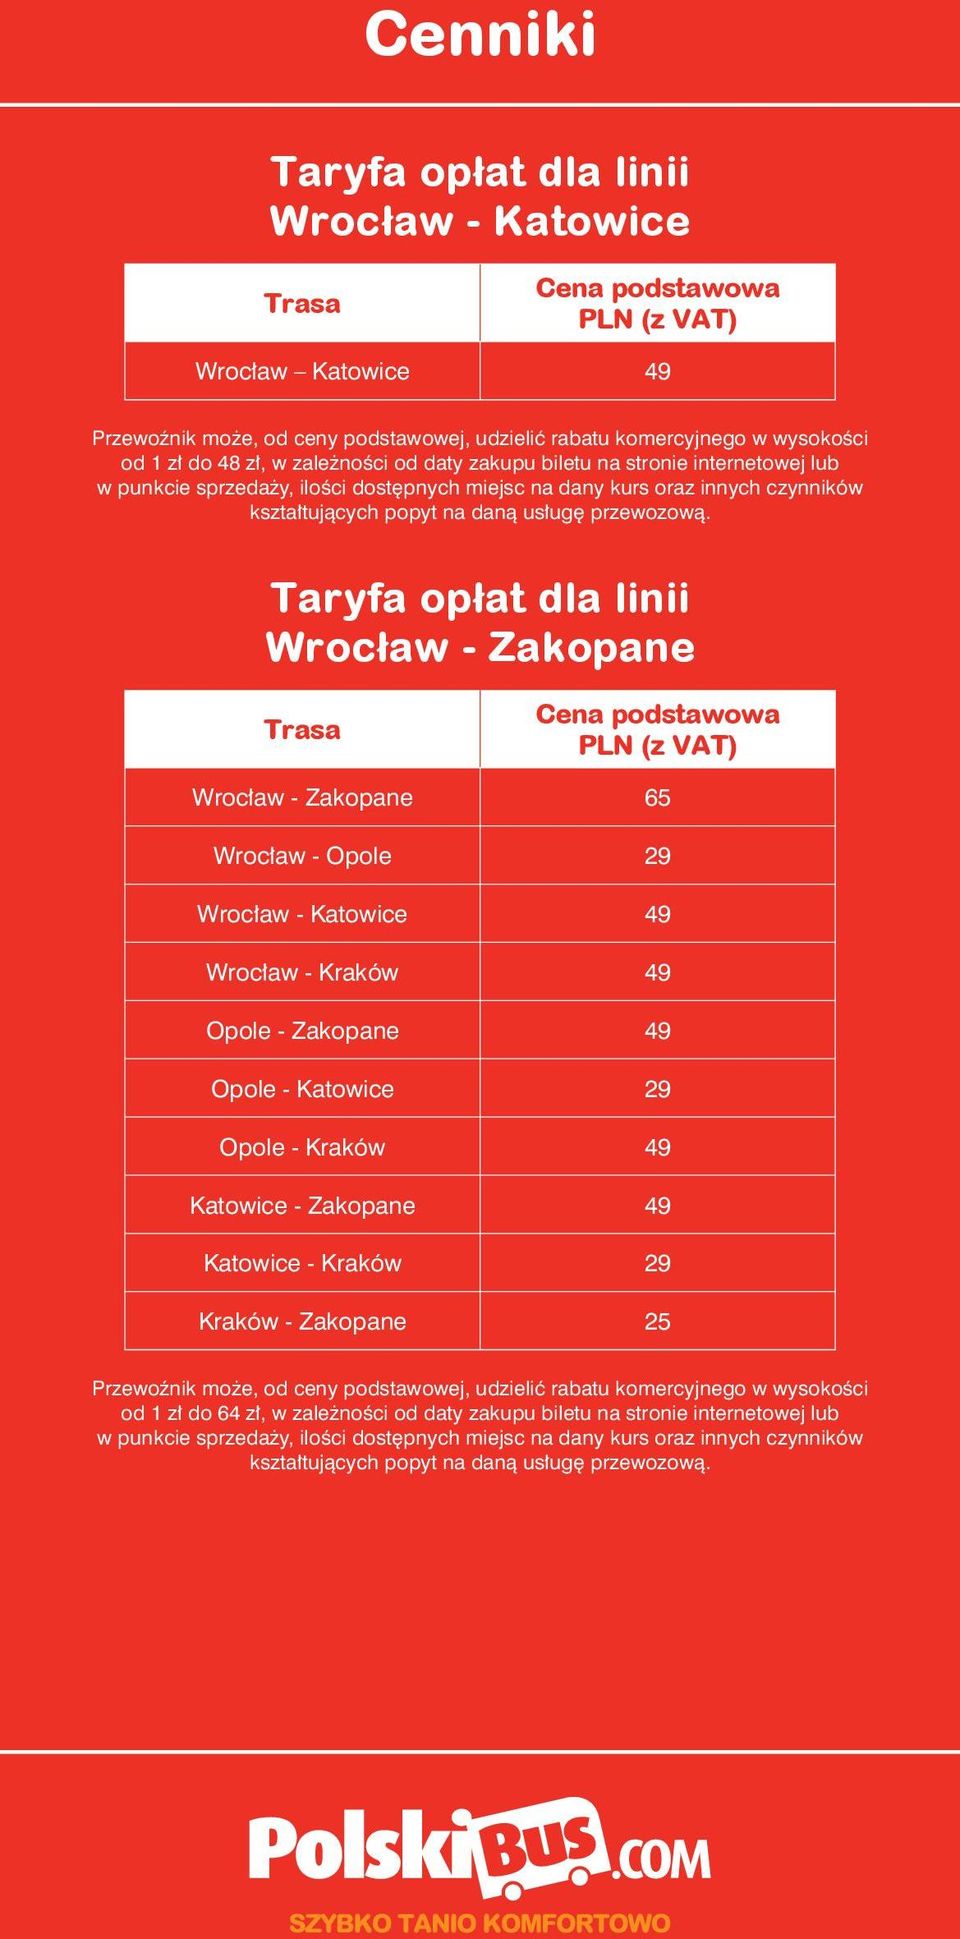 - Kraków 49 Opole - Zakopane 49 Opole - Katowice 29 Opole - Kraków 49 Katowice - Zakopane 49 Katowice -